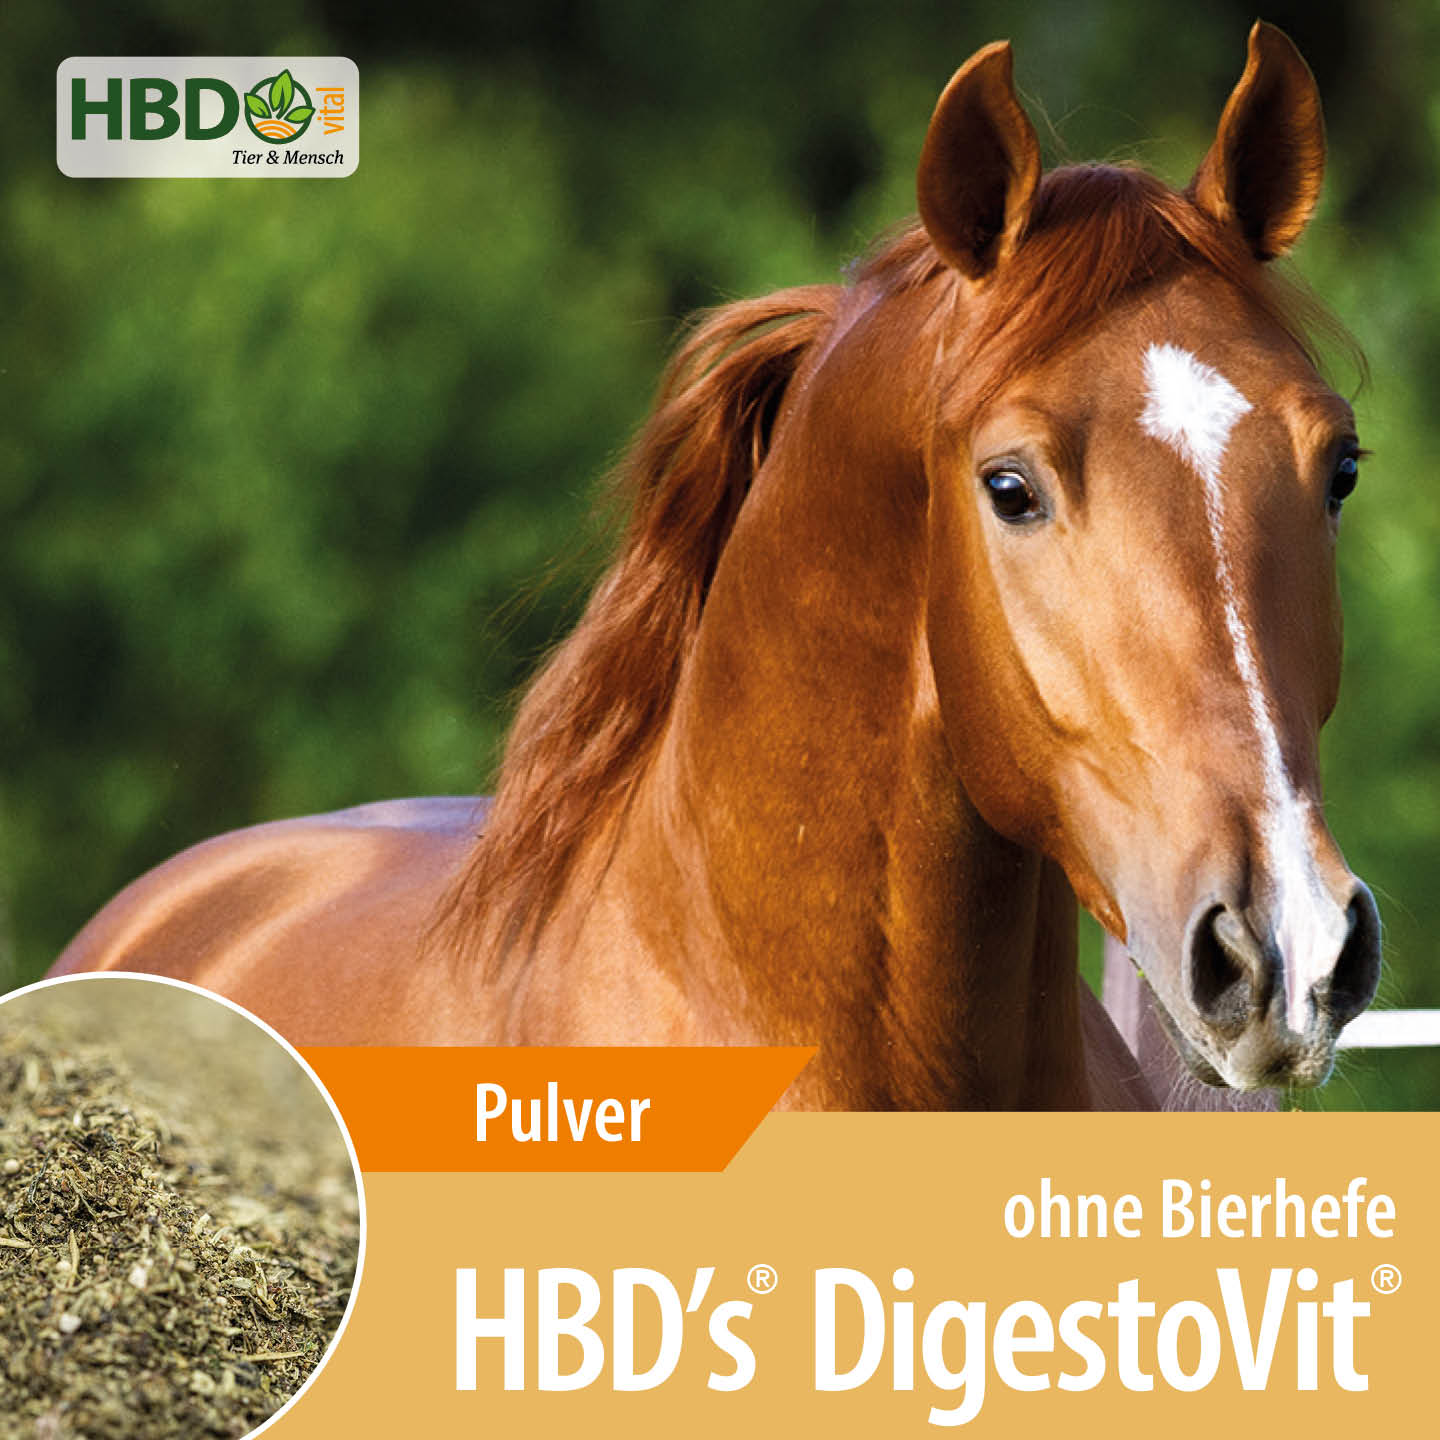 Shopbild für HBD's DigestoVit ohne Bierhefe für Pferde- Das Bild zeigt den Produktnamen  sowie den Hinweis, dass es sich um ein Pulver handelt. Ein braunes Pferd ist zu sehen, was das Produkt visuell ansprechend präsentiert u